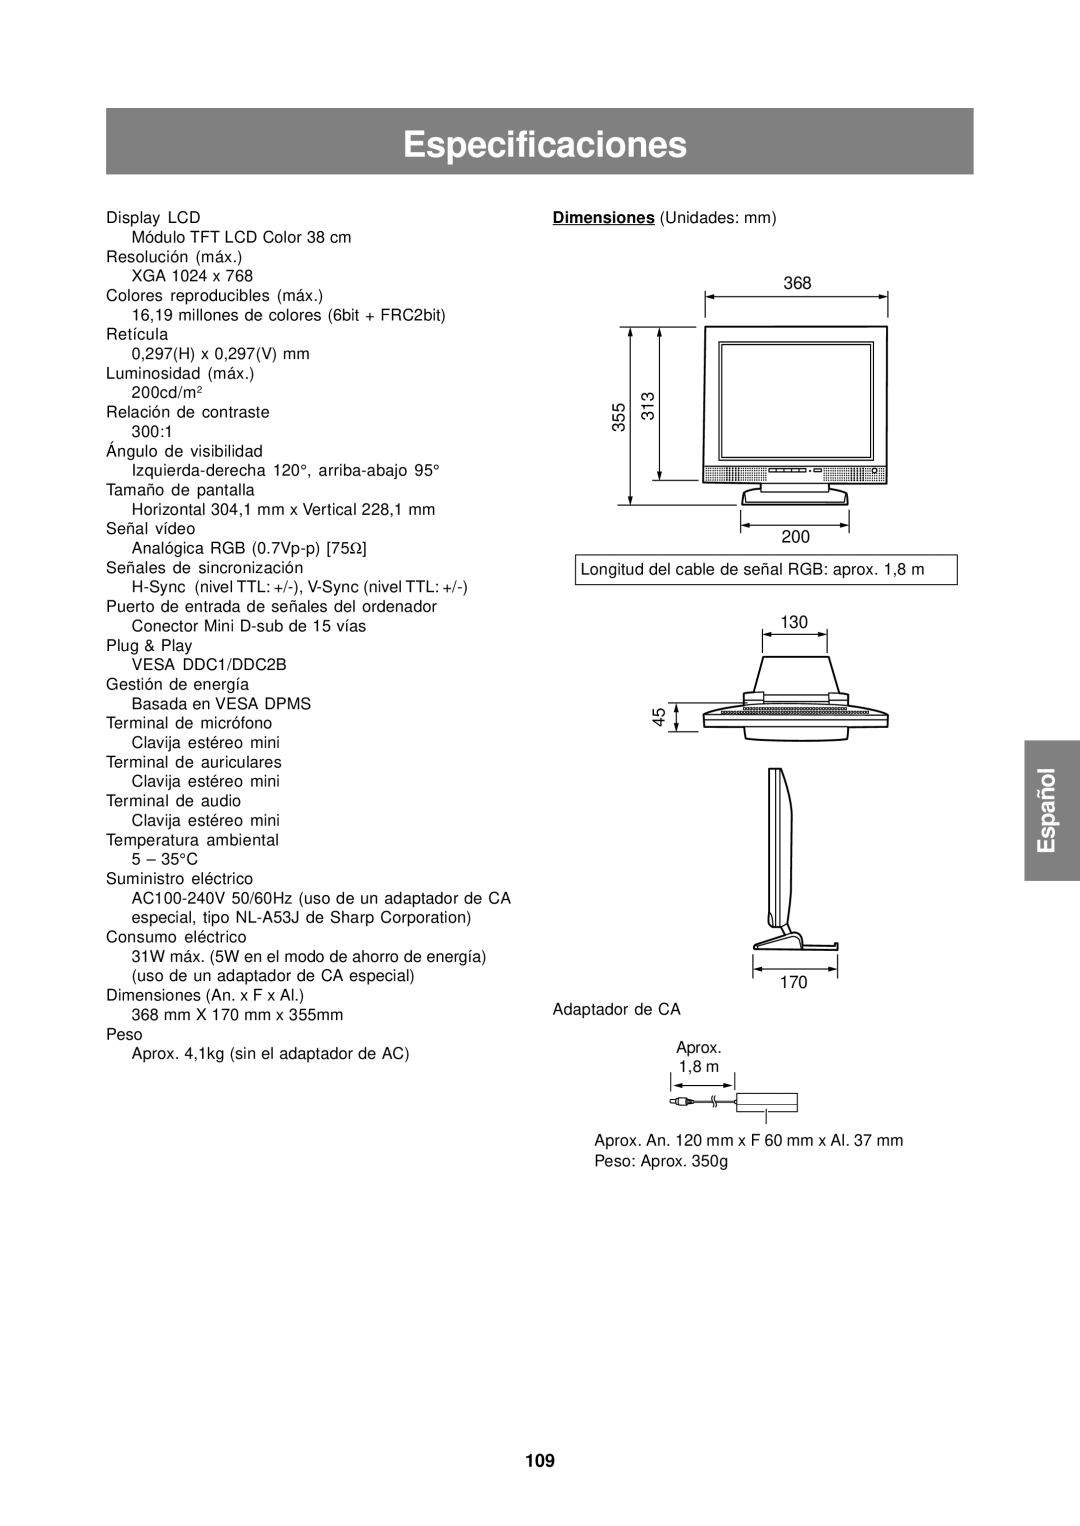 Sharp LL-T15S1 operation manual Especificaciones, 109 